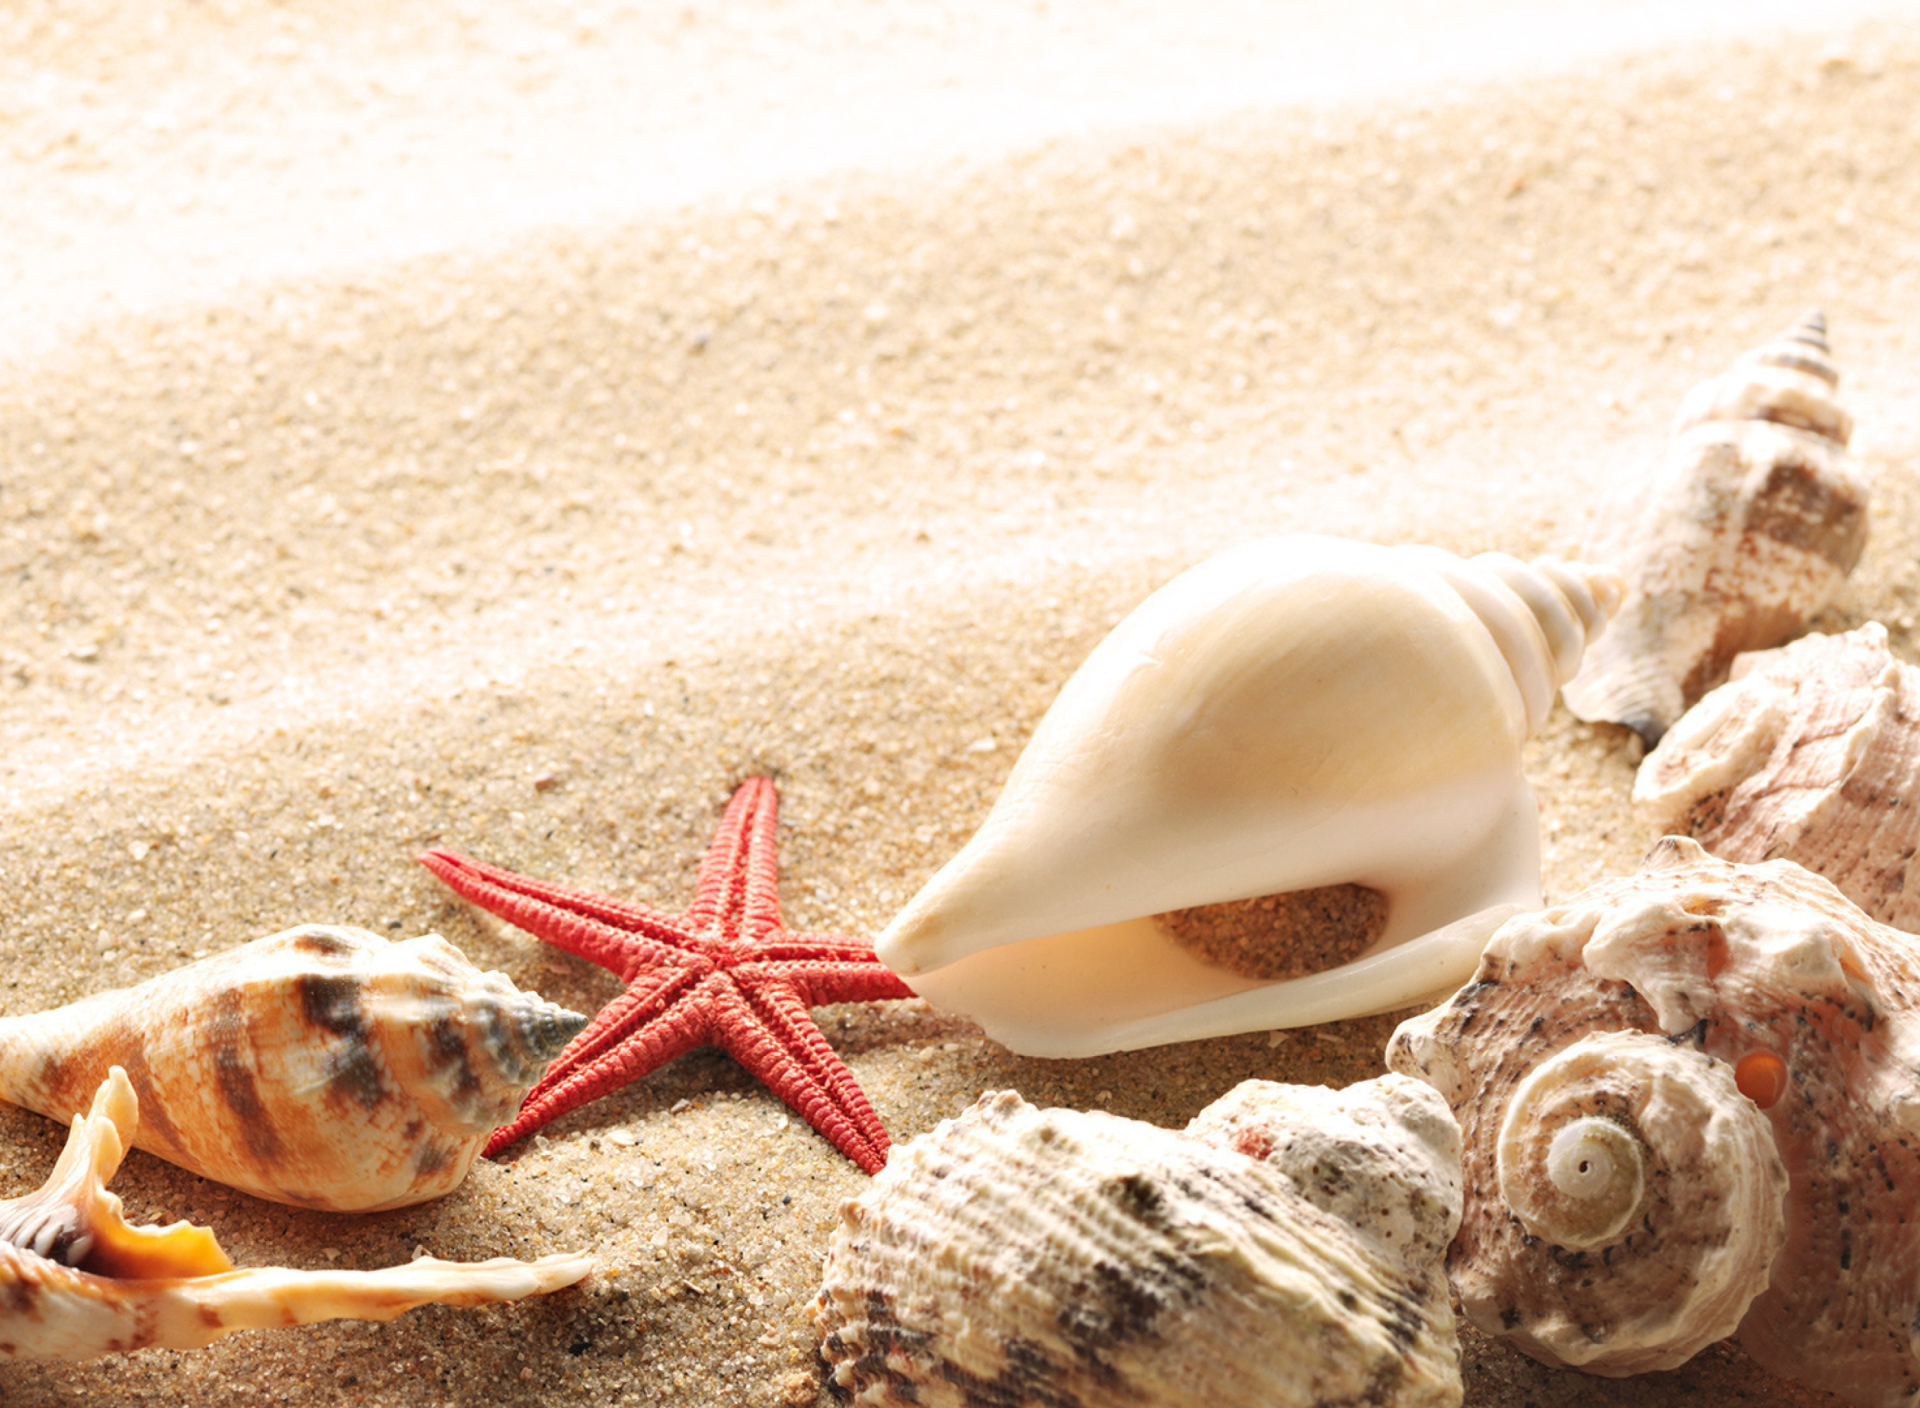 Обои Seashells On The Beach 1920x1408